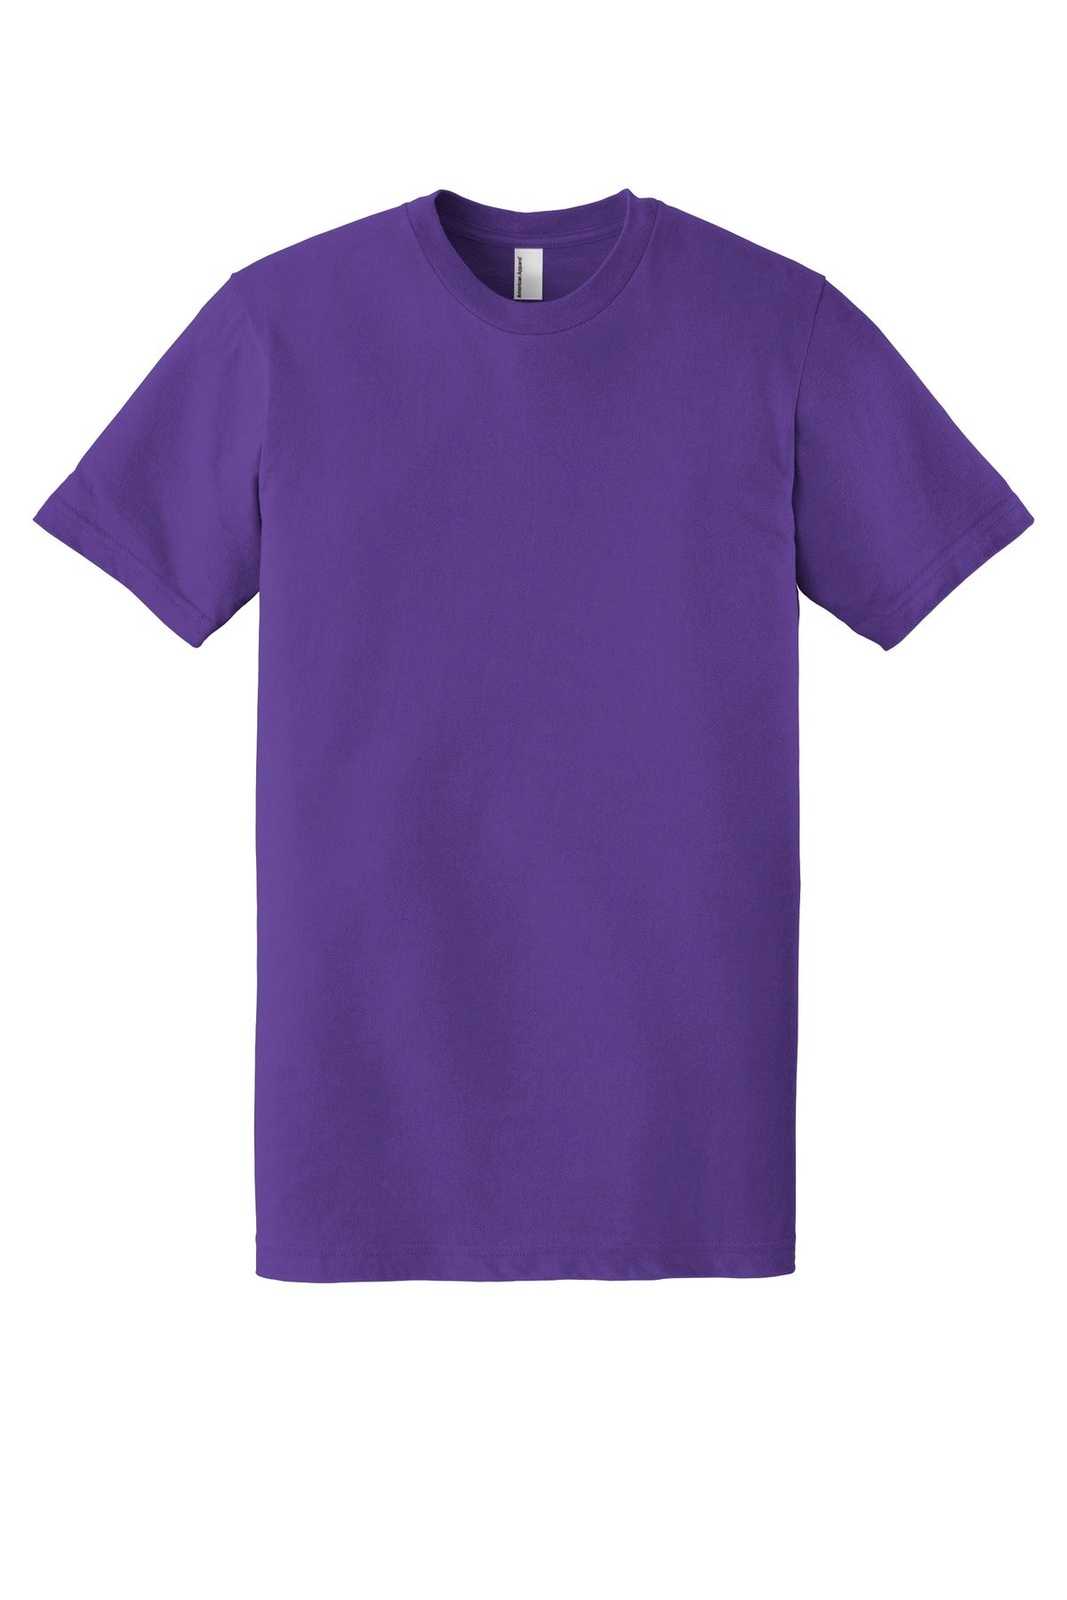 American Apparel 2001W Fine Jersey T-Shirt - Purple - HIT a Double